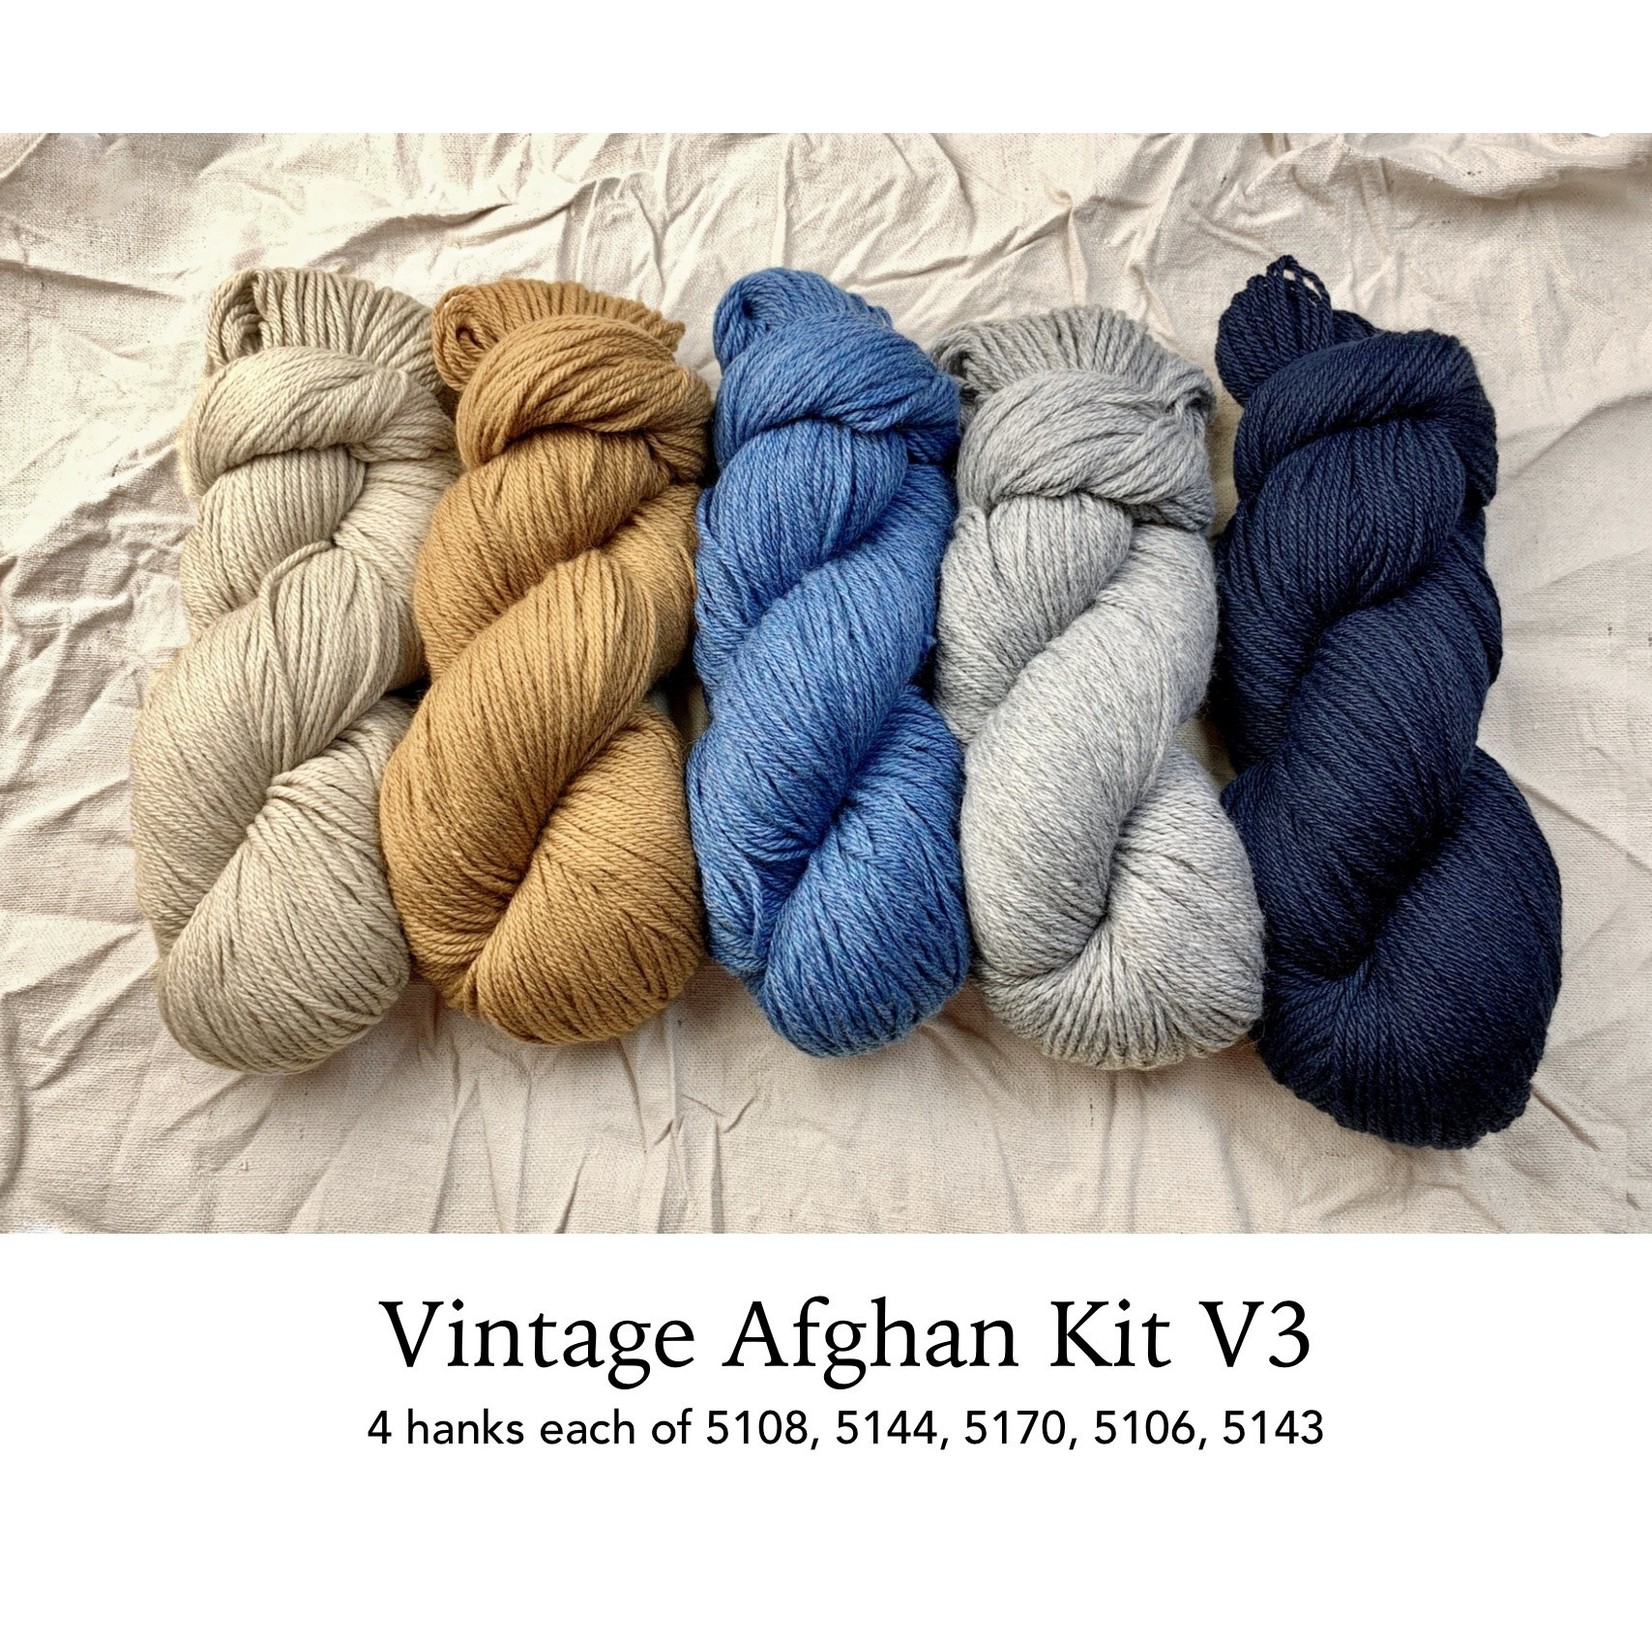 Berroco, Inc. Norah's Vintage Afghan Kit